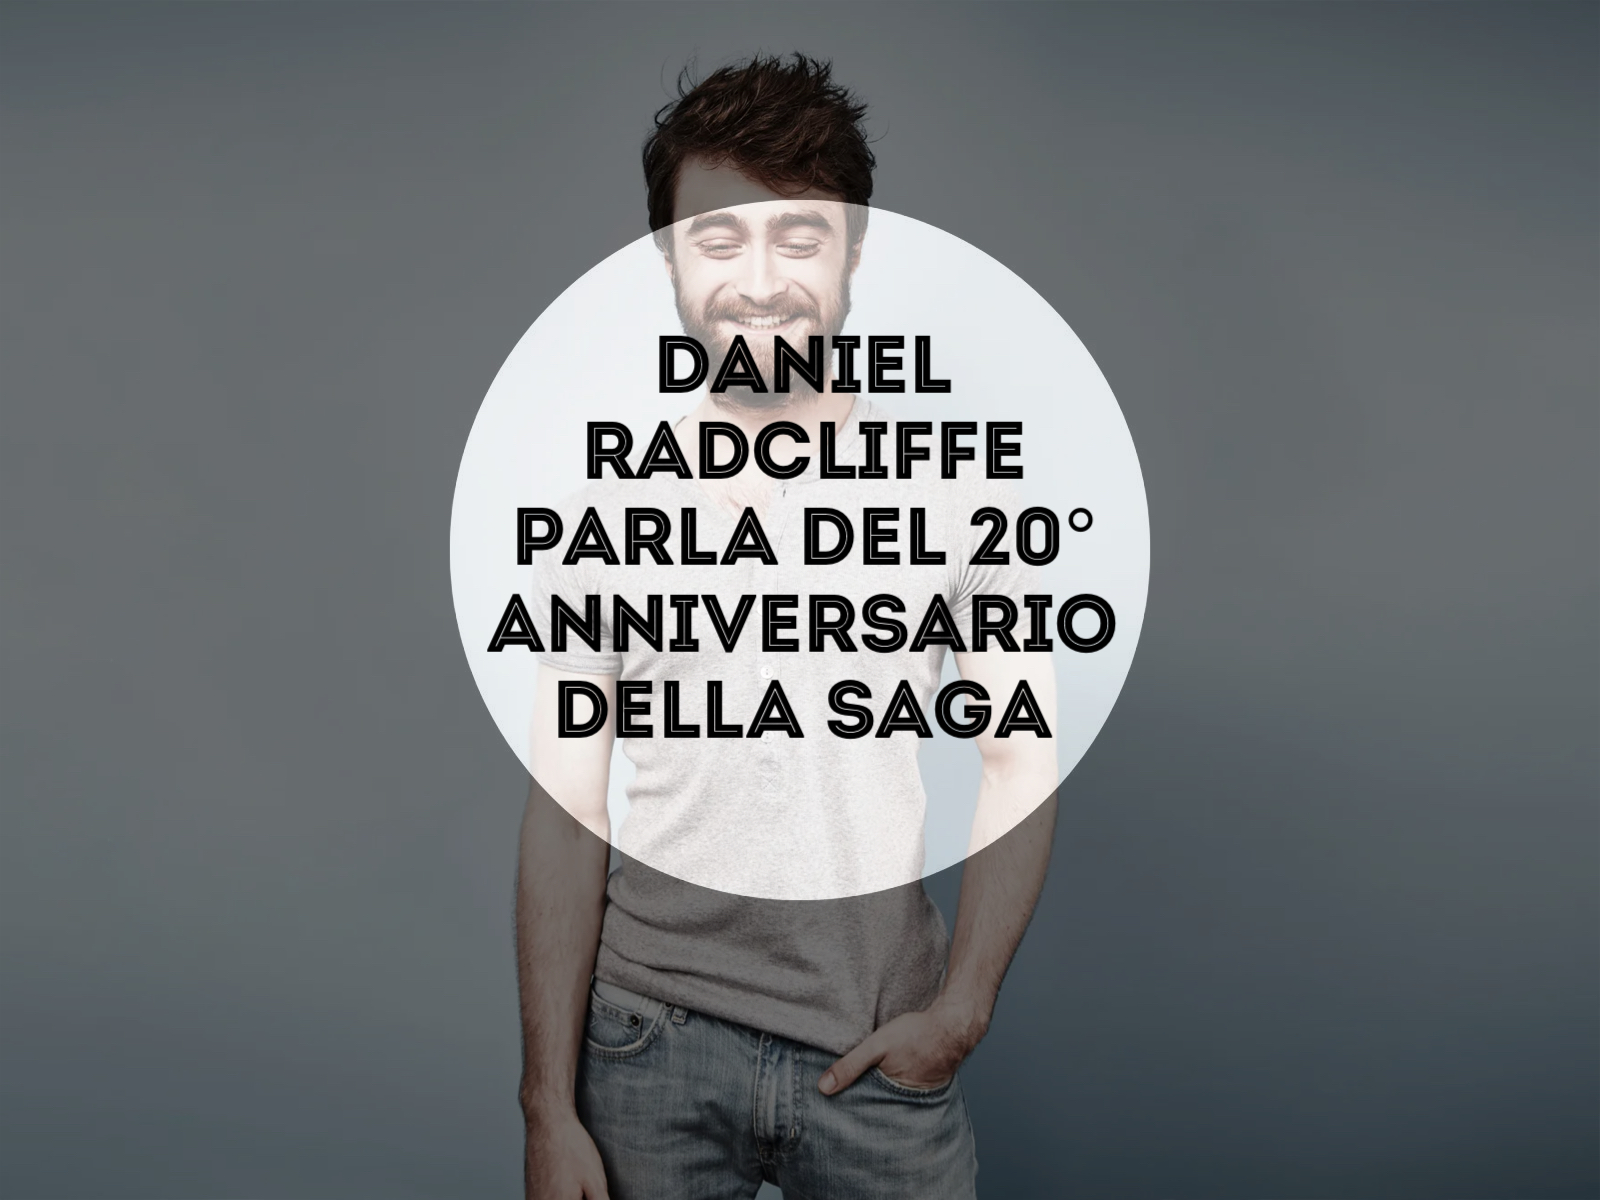 Daniel Radcliffe parla del 20° anniversario della saga